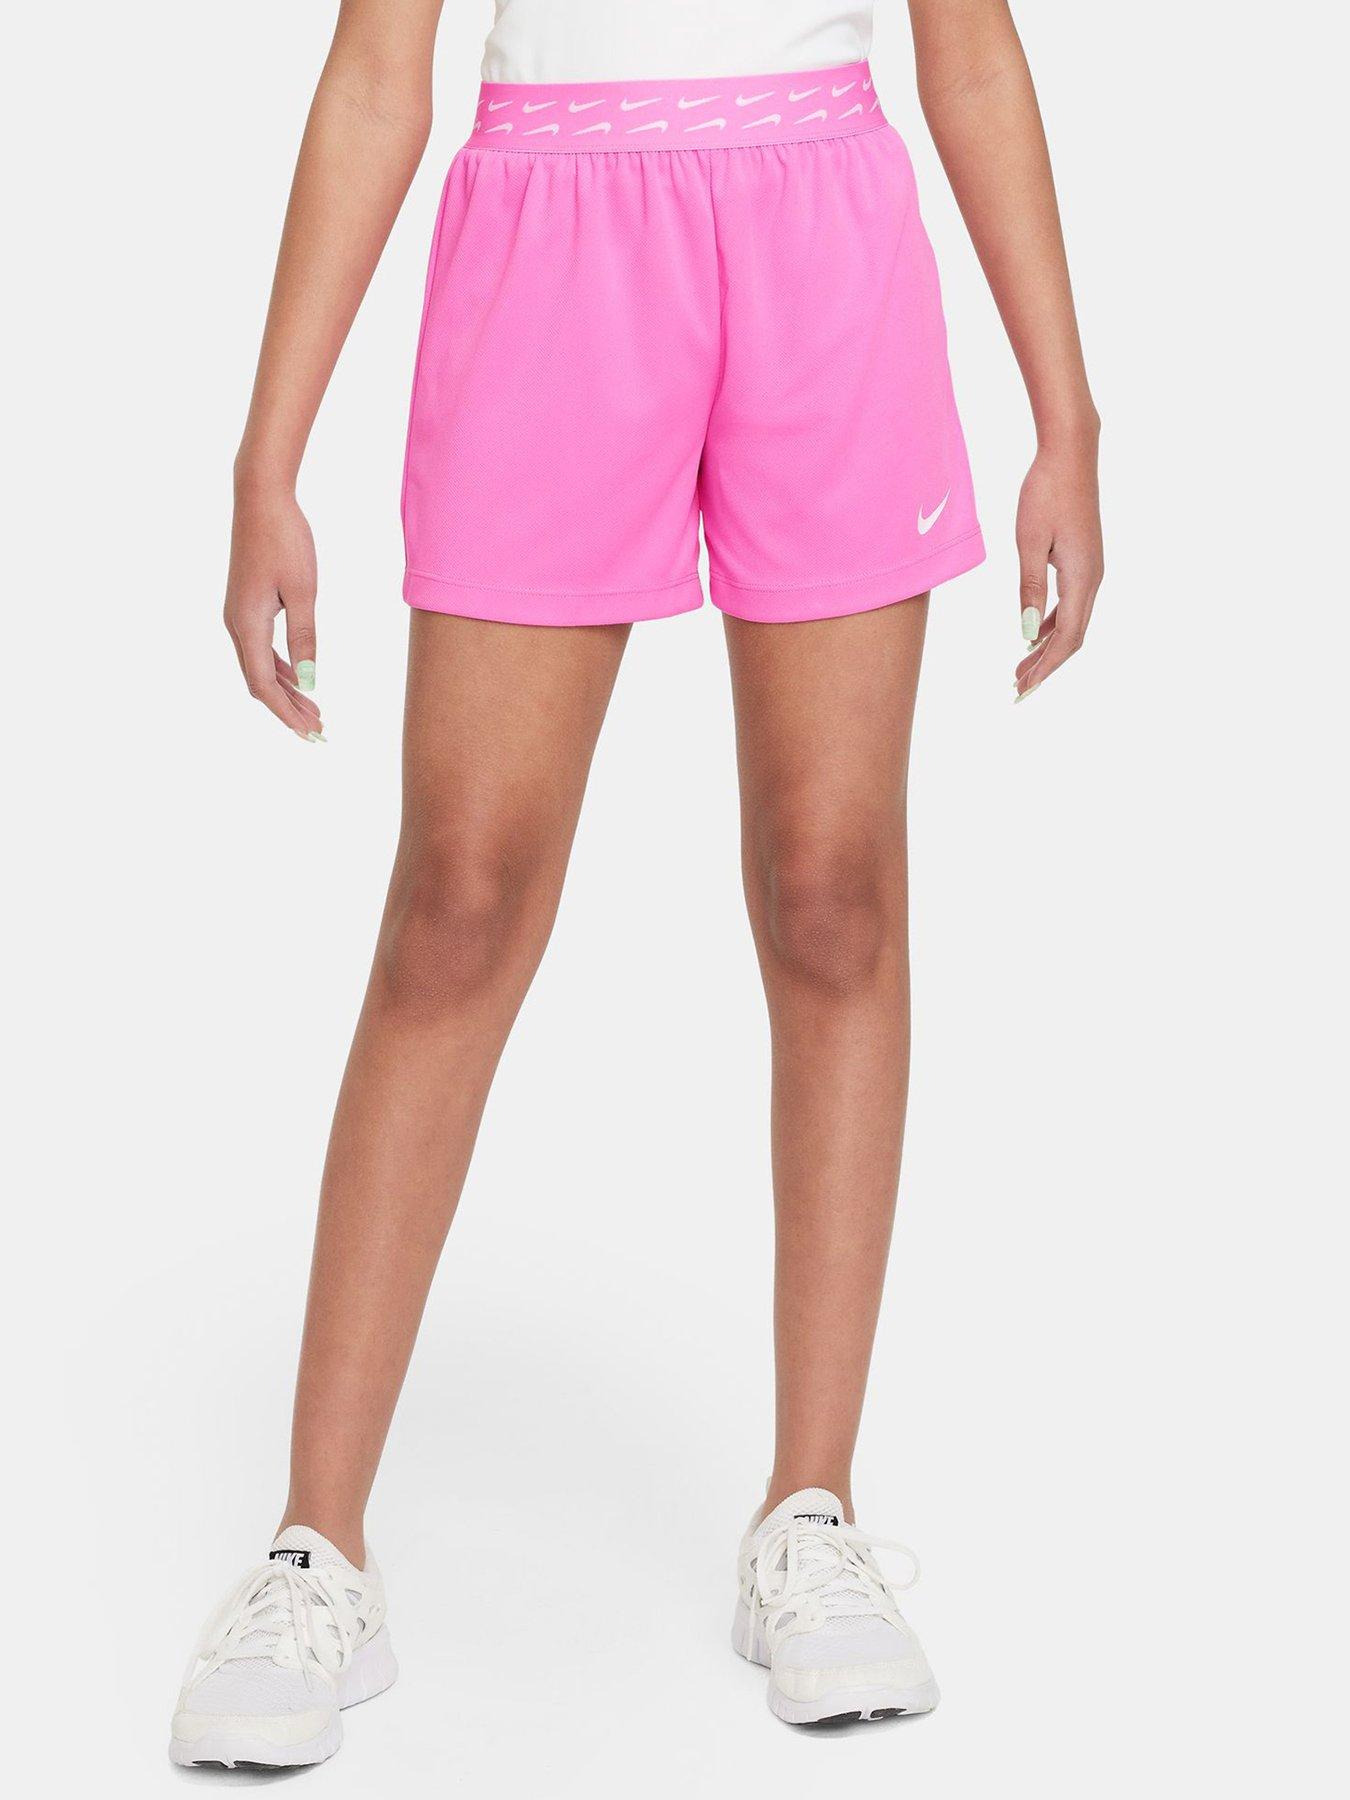 Nike Older Girls Nike Pro Leggings - Pink